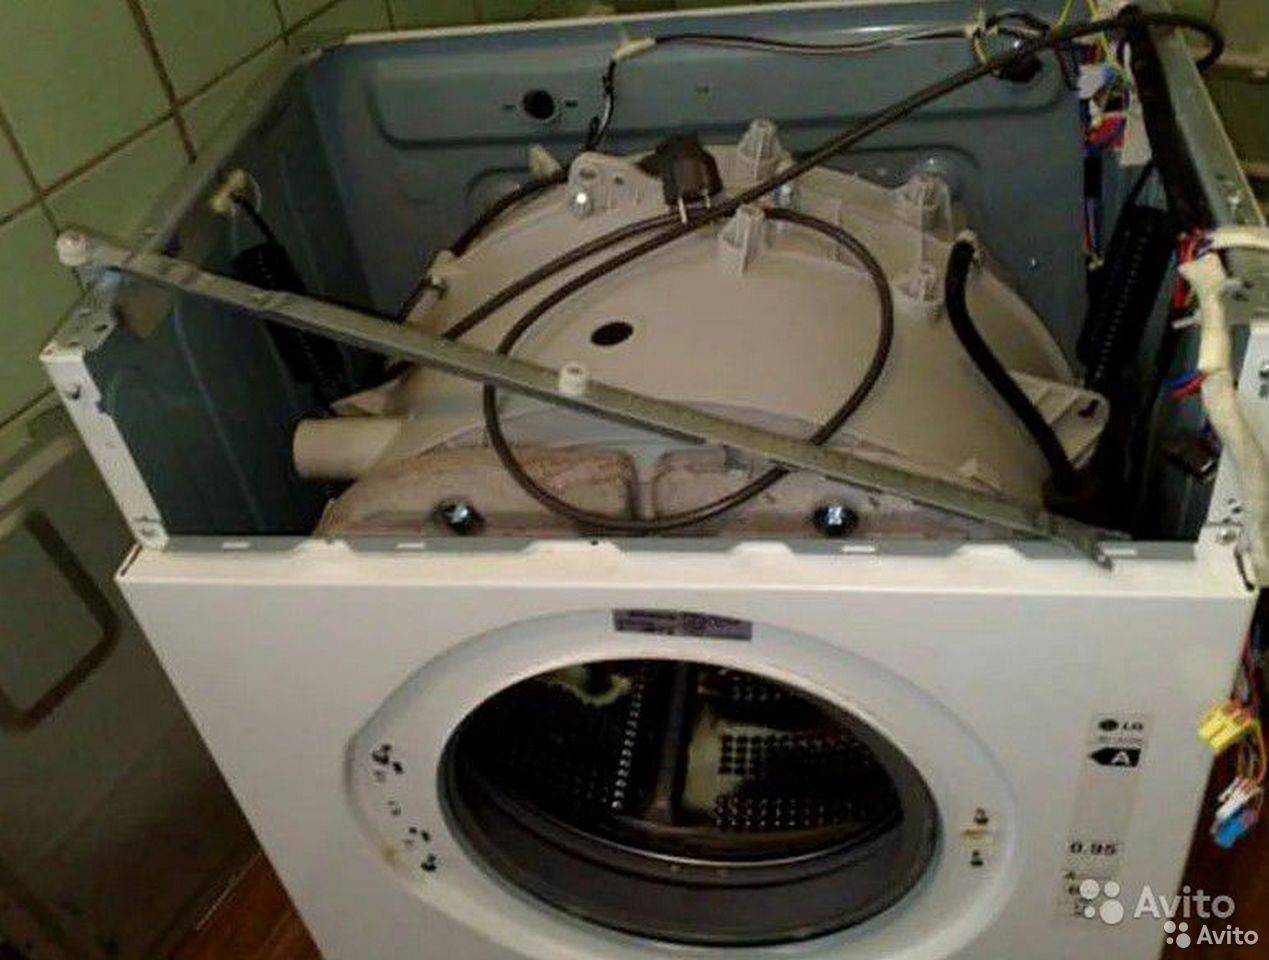 Ремонт стиральных машин аристон в москве. Машинка Хотпоинт Аристон, разобранная. Бак на стиральную машинку Канди. Стиральная машинка Аристон 109 разборка. Барабан стиральной машины самсунг.